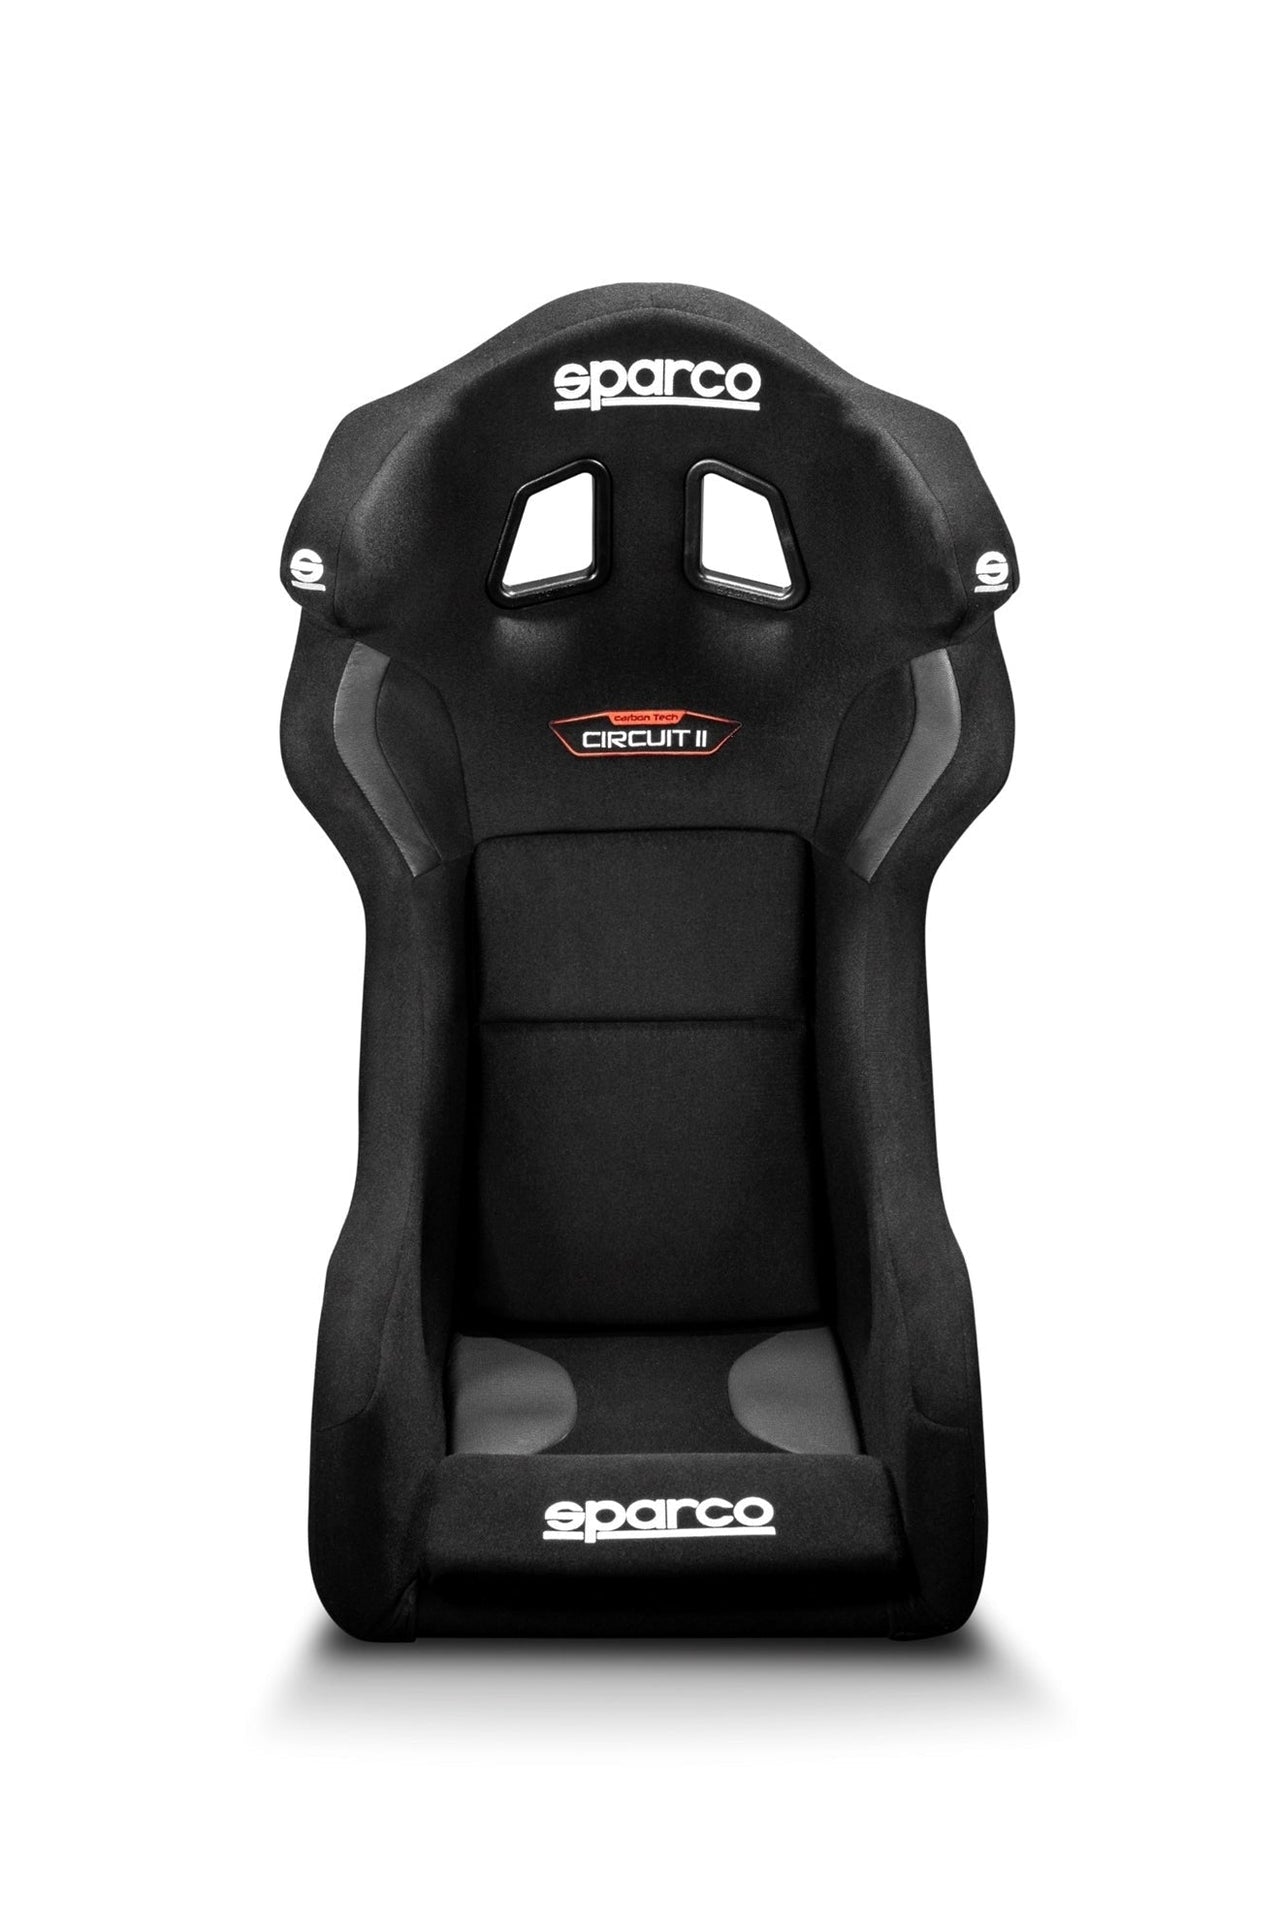 Sparco Circuit Carbon Fiber Racing Seats (Circuit II QRT) - Large 2028